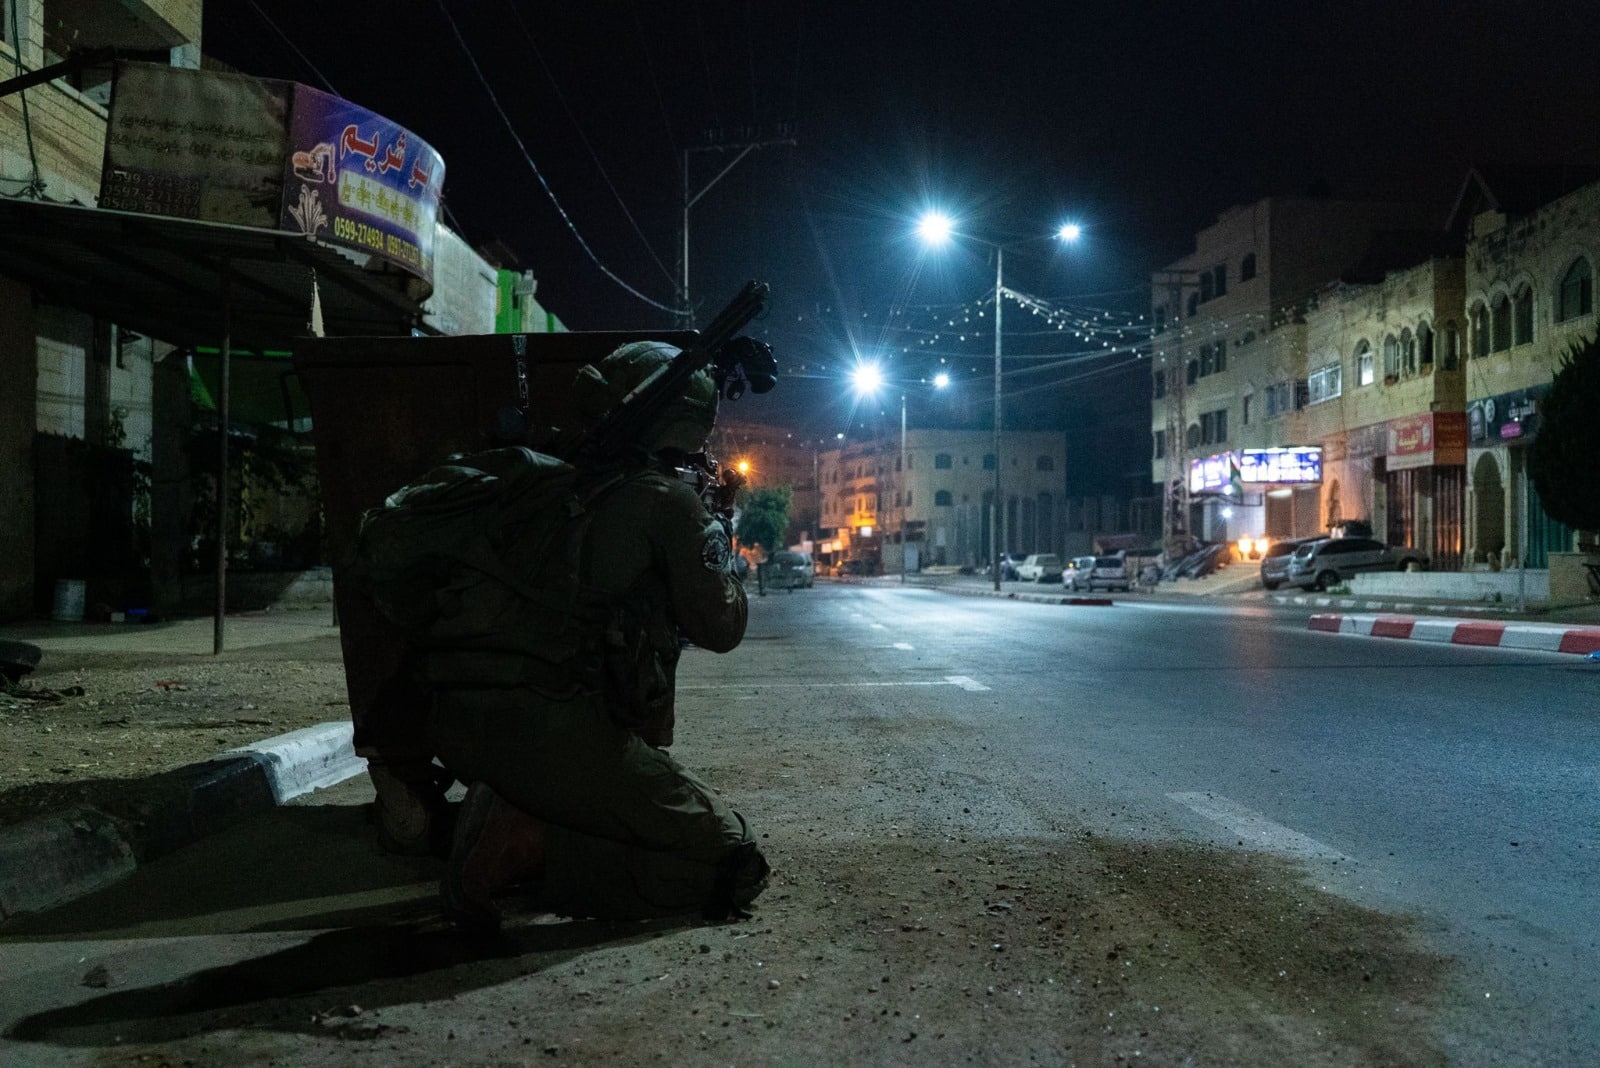 כוחות הביטחון עצרו הלילה 12 מבוקשים ברחבי יו"ש